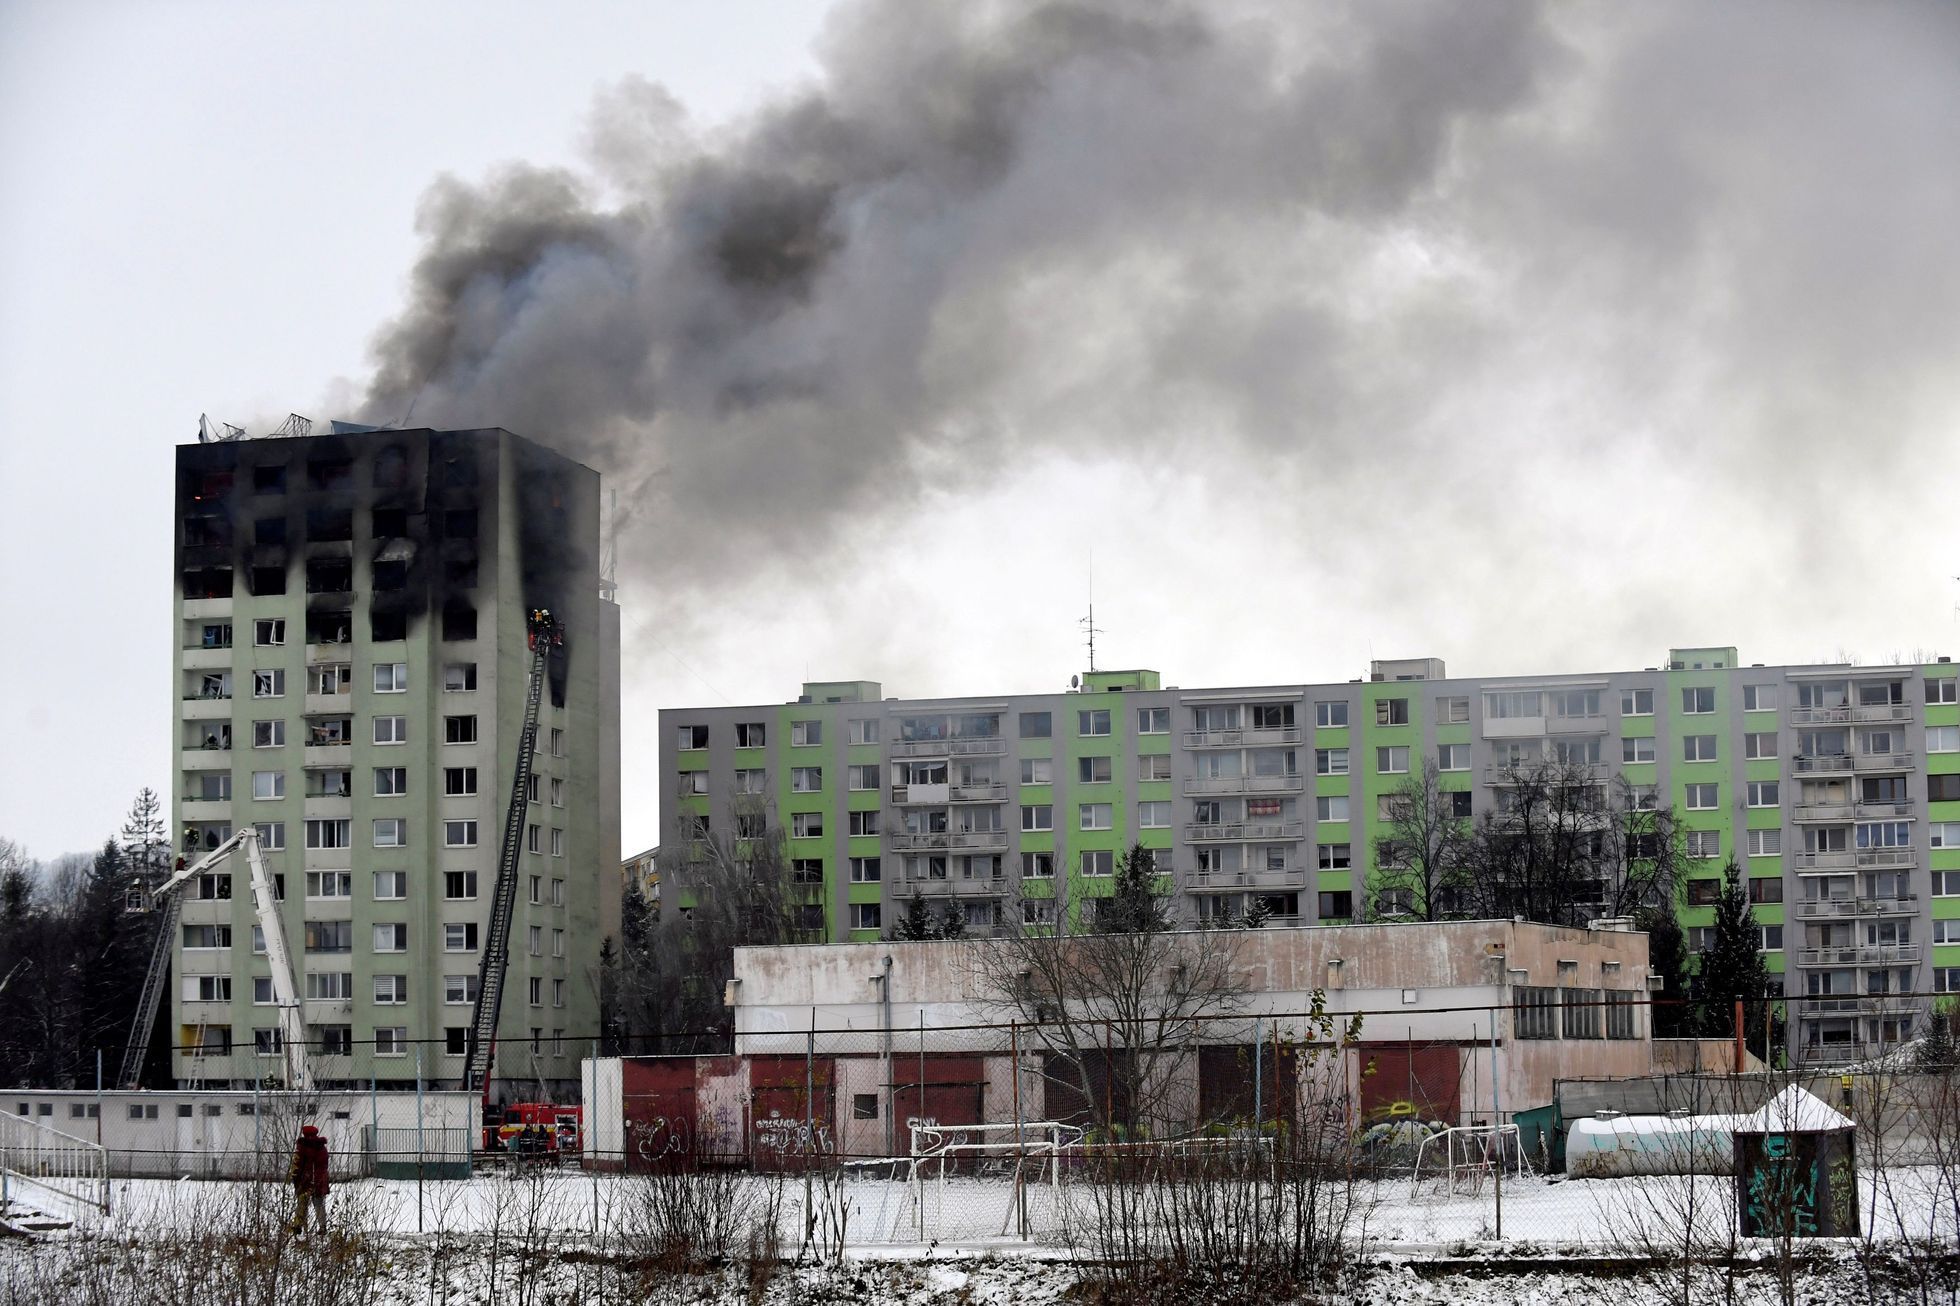 Výbuch panelového domu ve slovenském Prešově